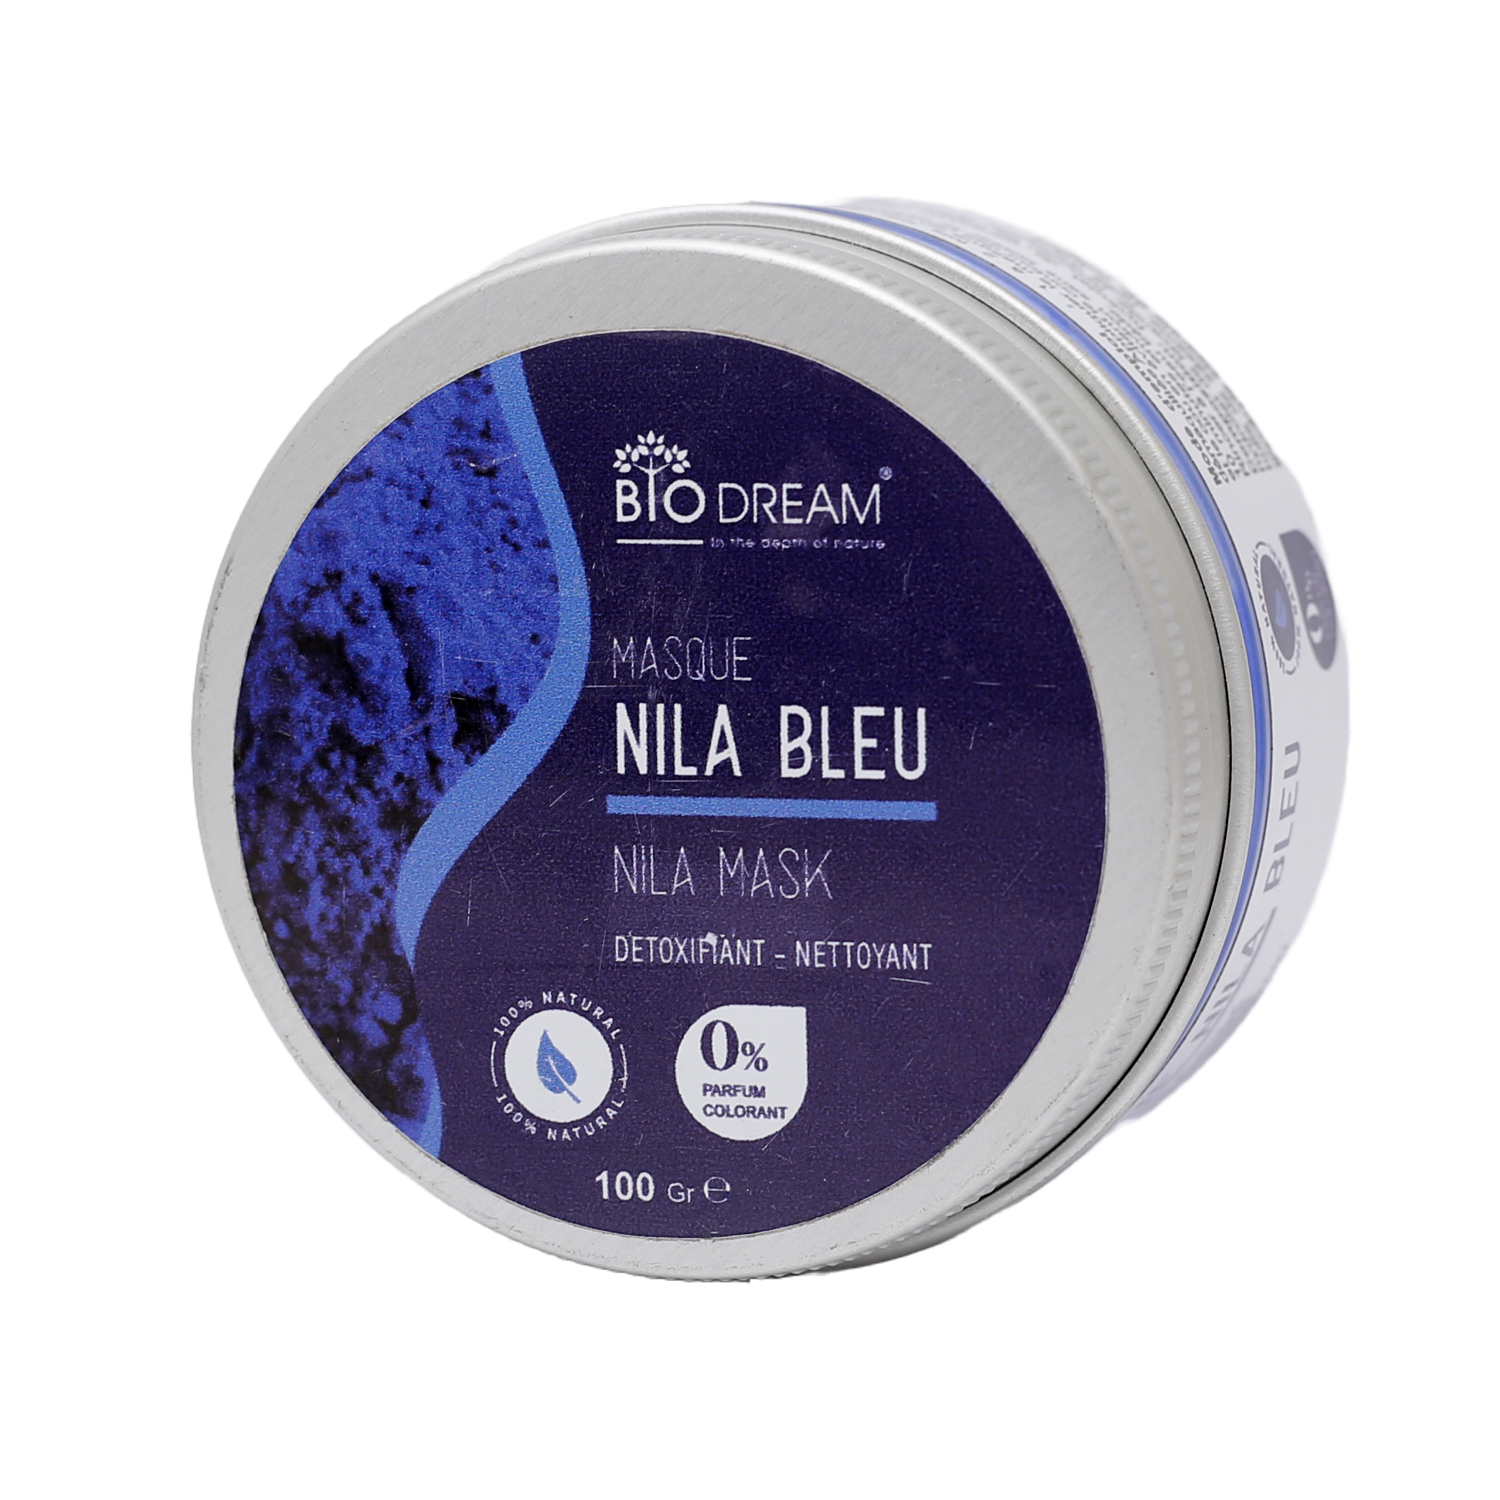 Nila Bleu 100g